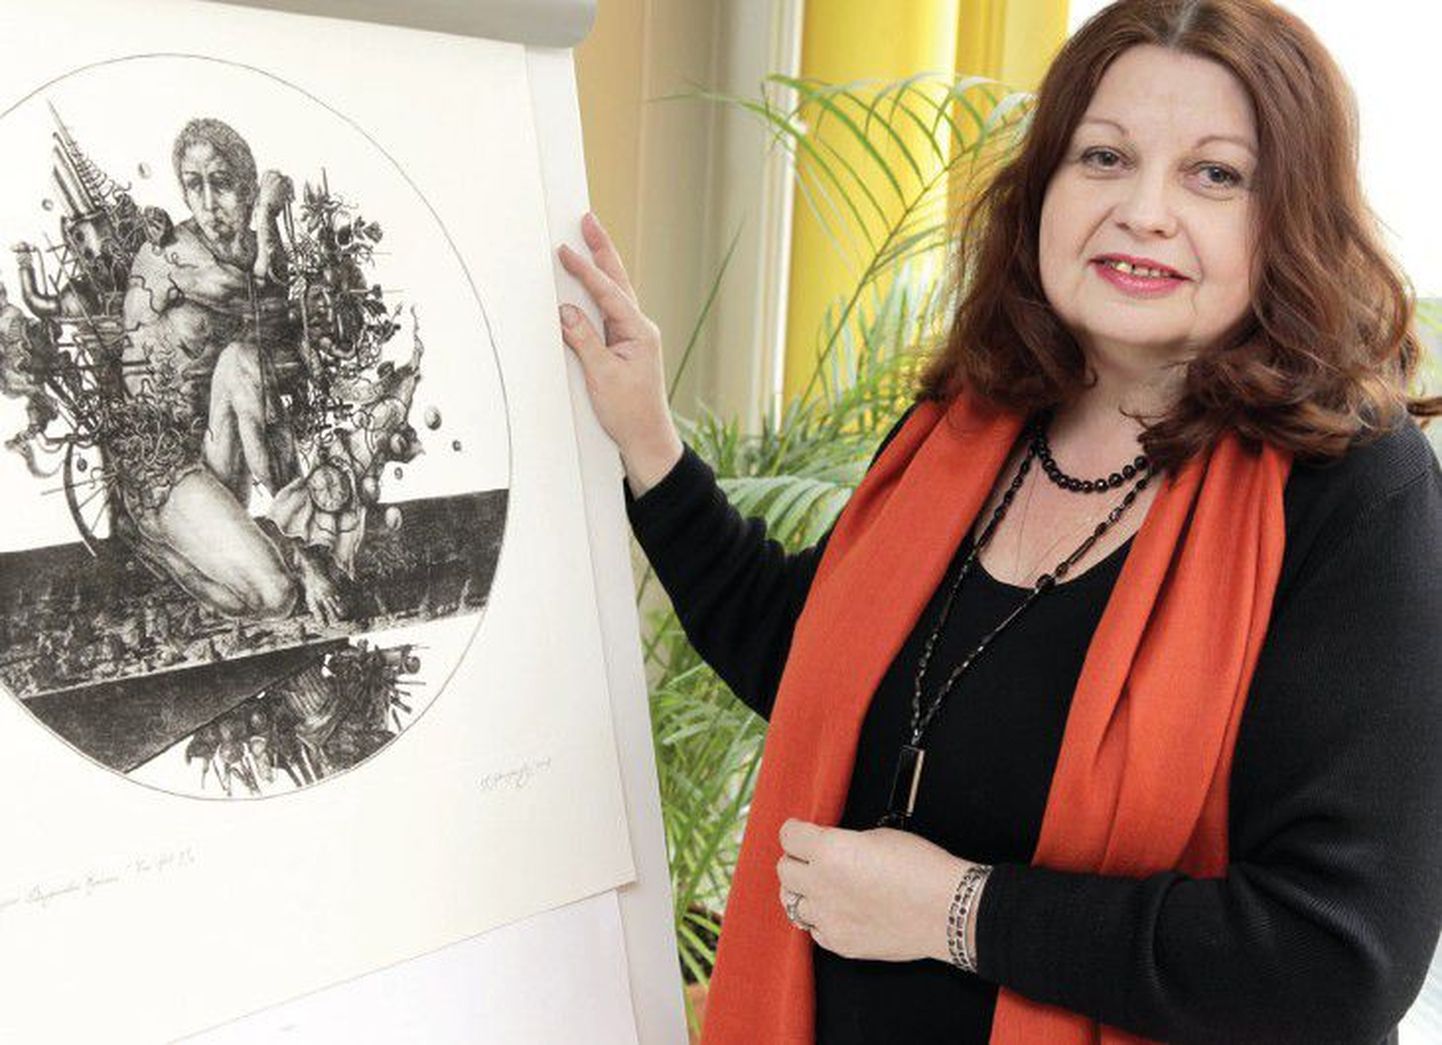 Вера Станишевская демонстрирует работу своего мужа, известного таллиннского графика и иллюстратора Влада Станишевского «Равноденствие», которая будет представлена на выставке, приуроченной к его 65-летию.